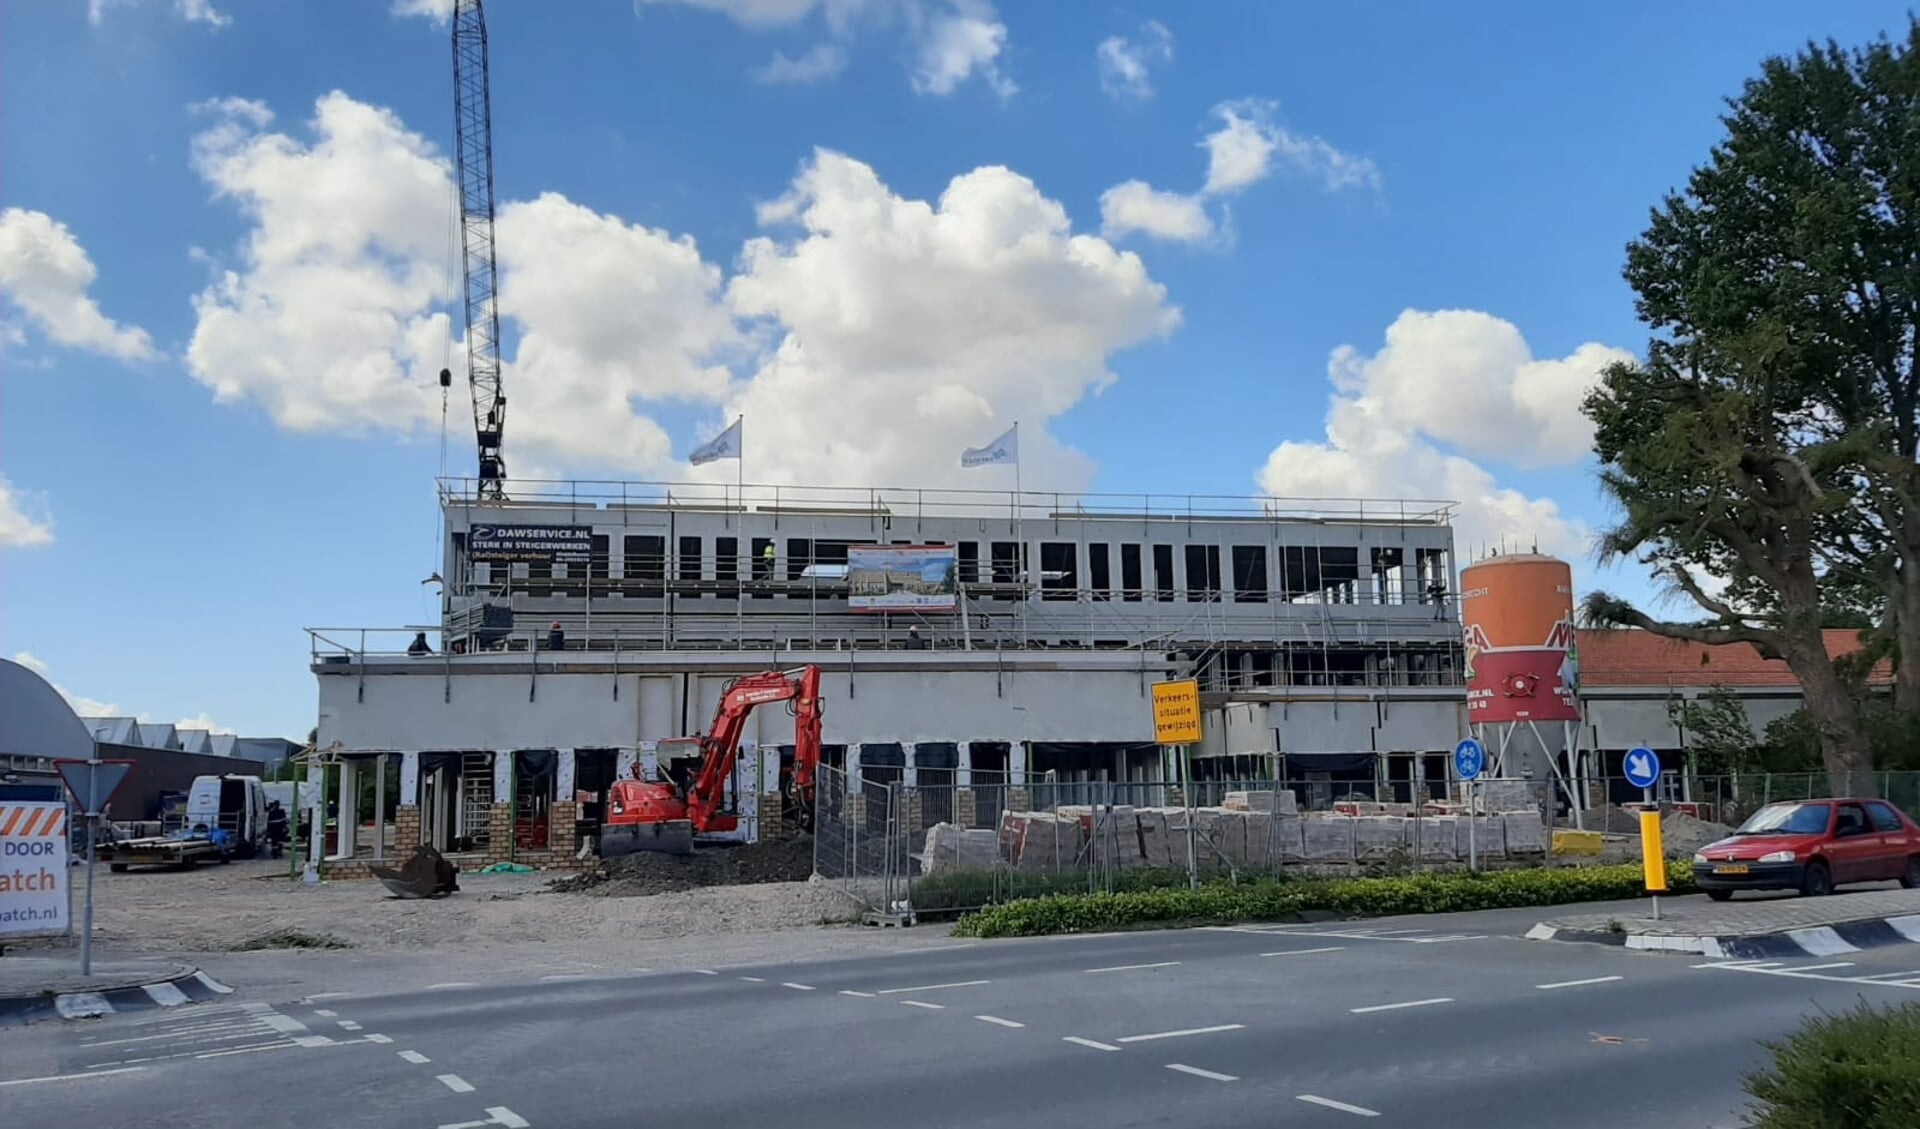 Zoals het er nu naar uitziet, zal de oplevering van dit nieuwe schoolgebouw eind december 2020 zijn.